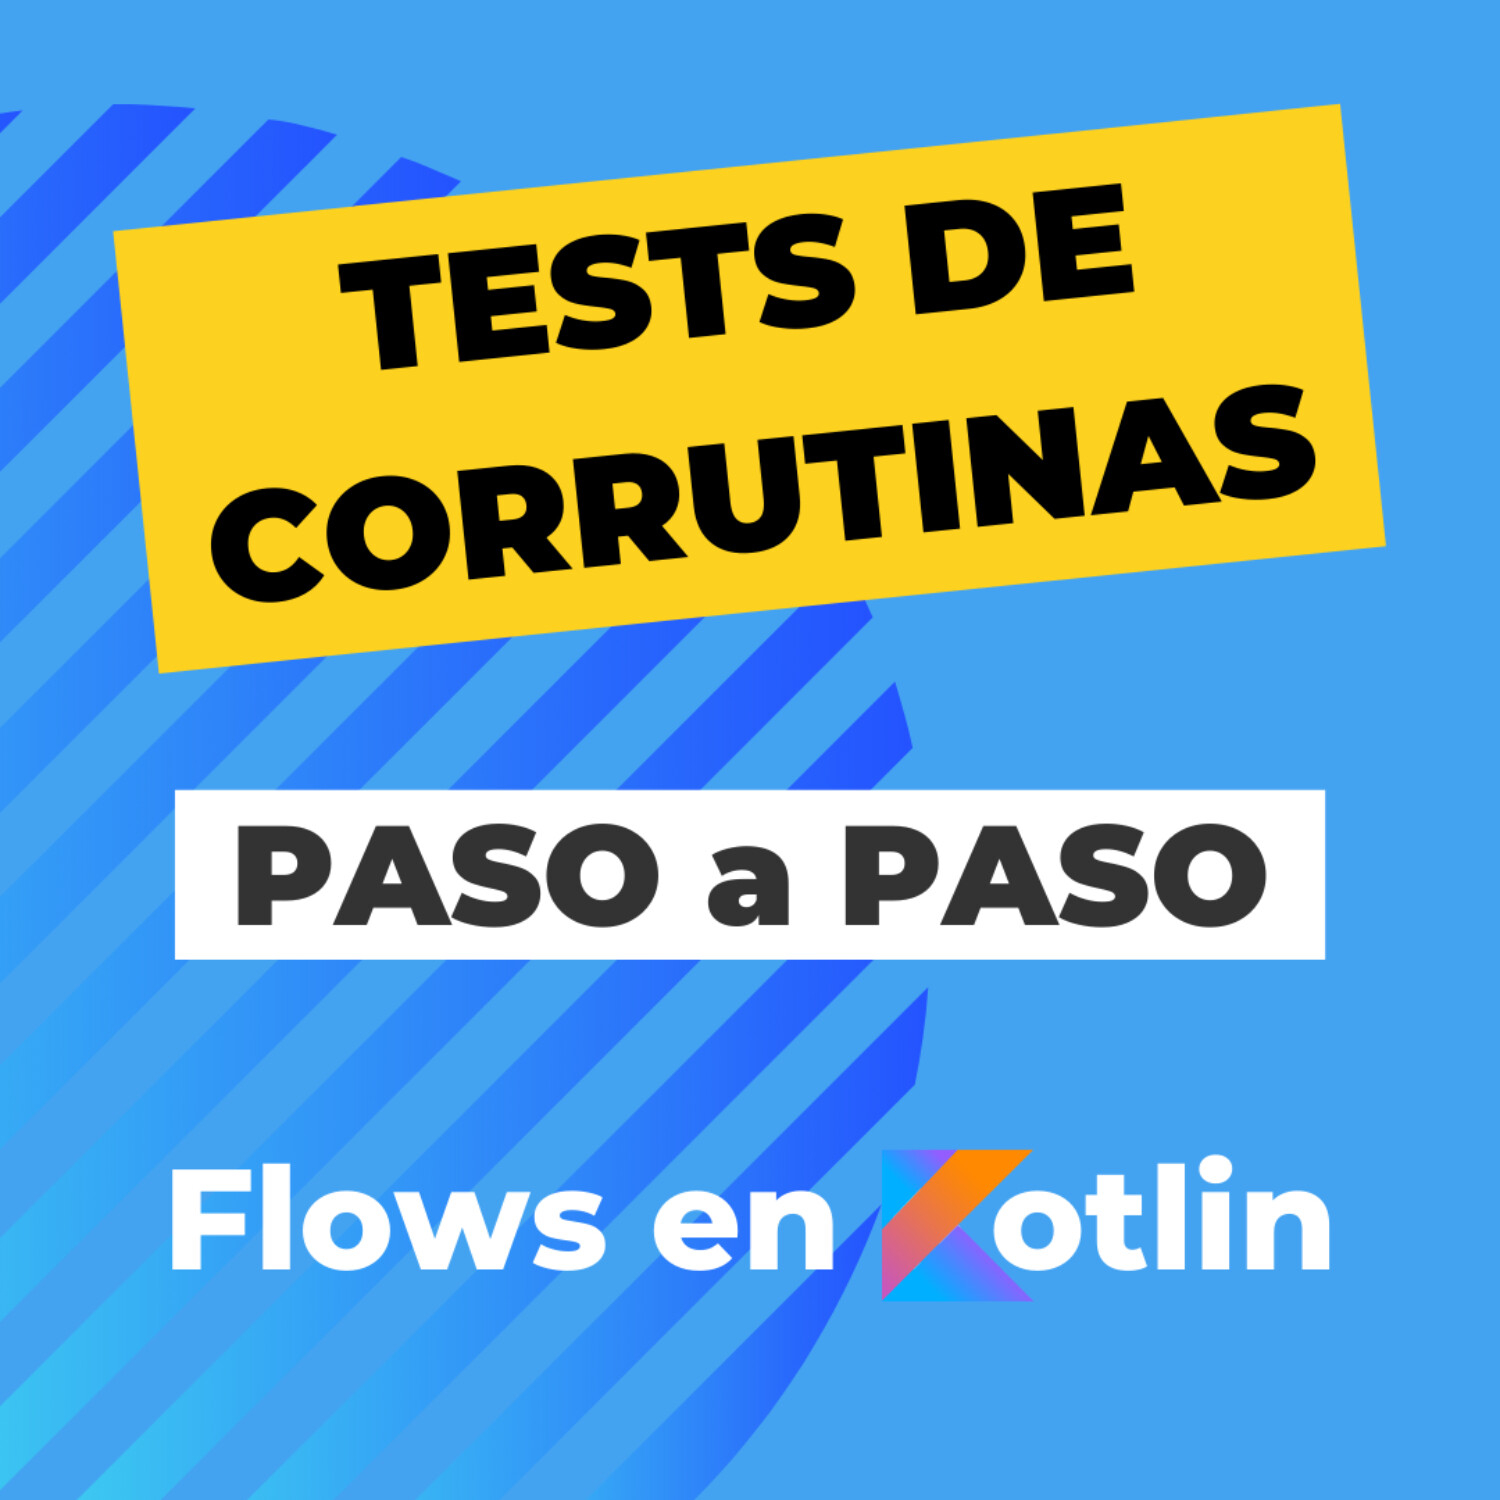 Cómo hacer Tests de Corrutinas y Flows en Kotlin [Paso a Paso] | EP 082